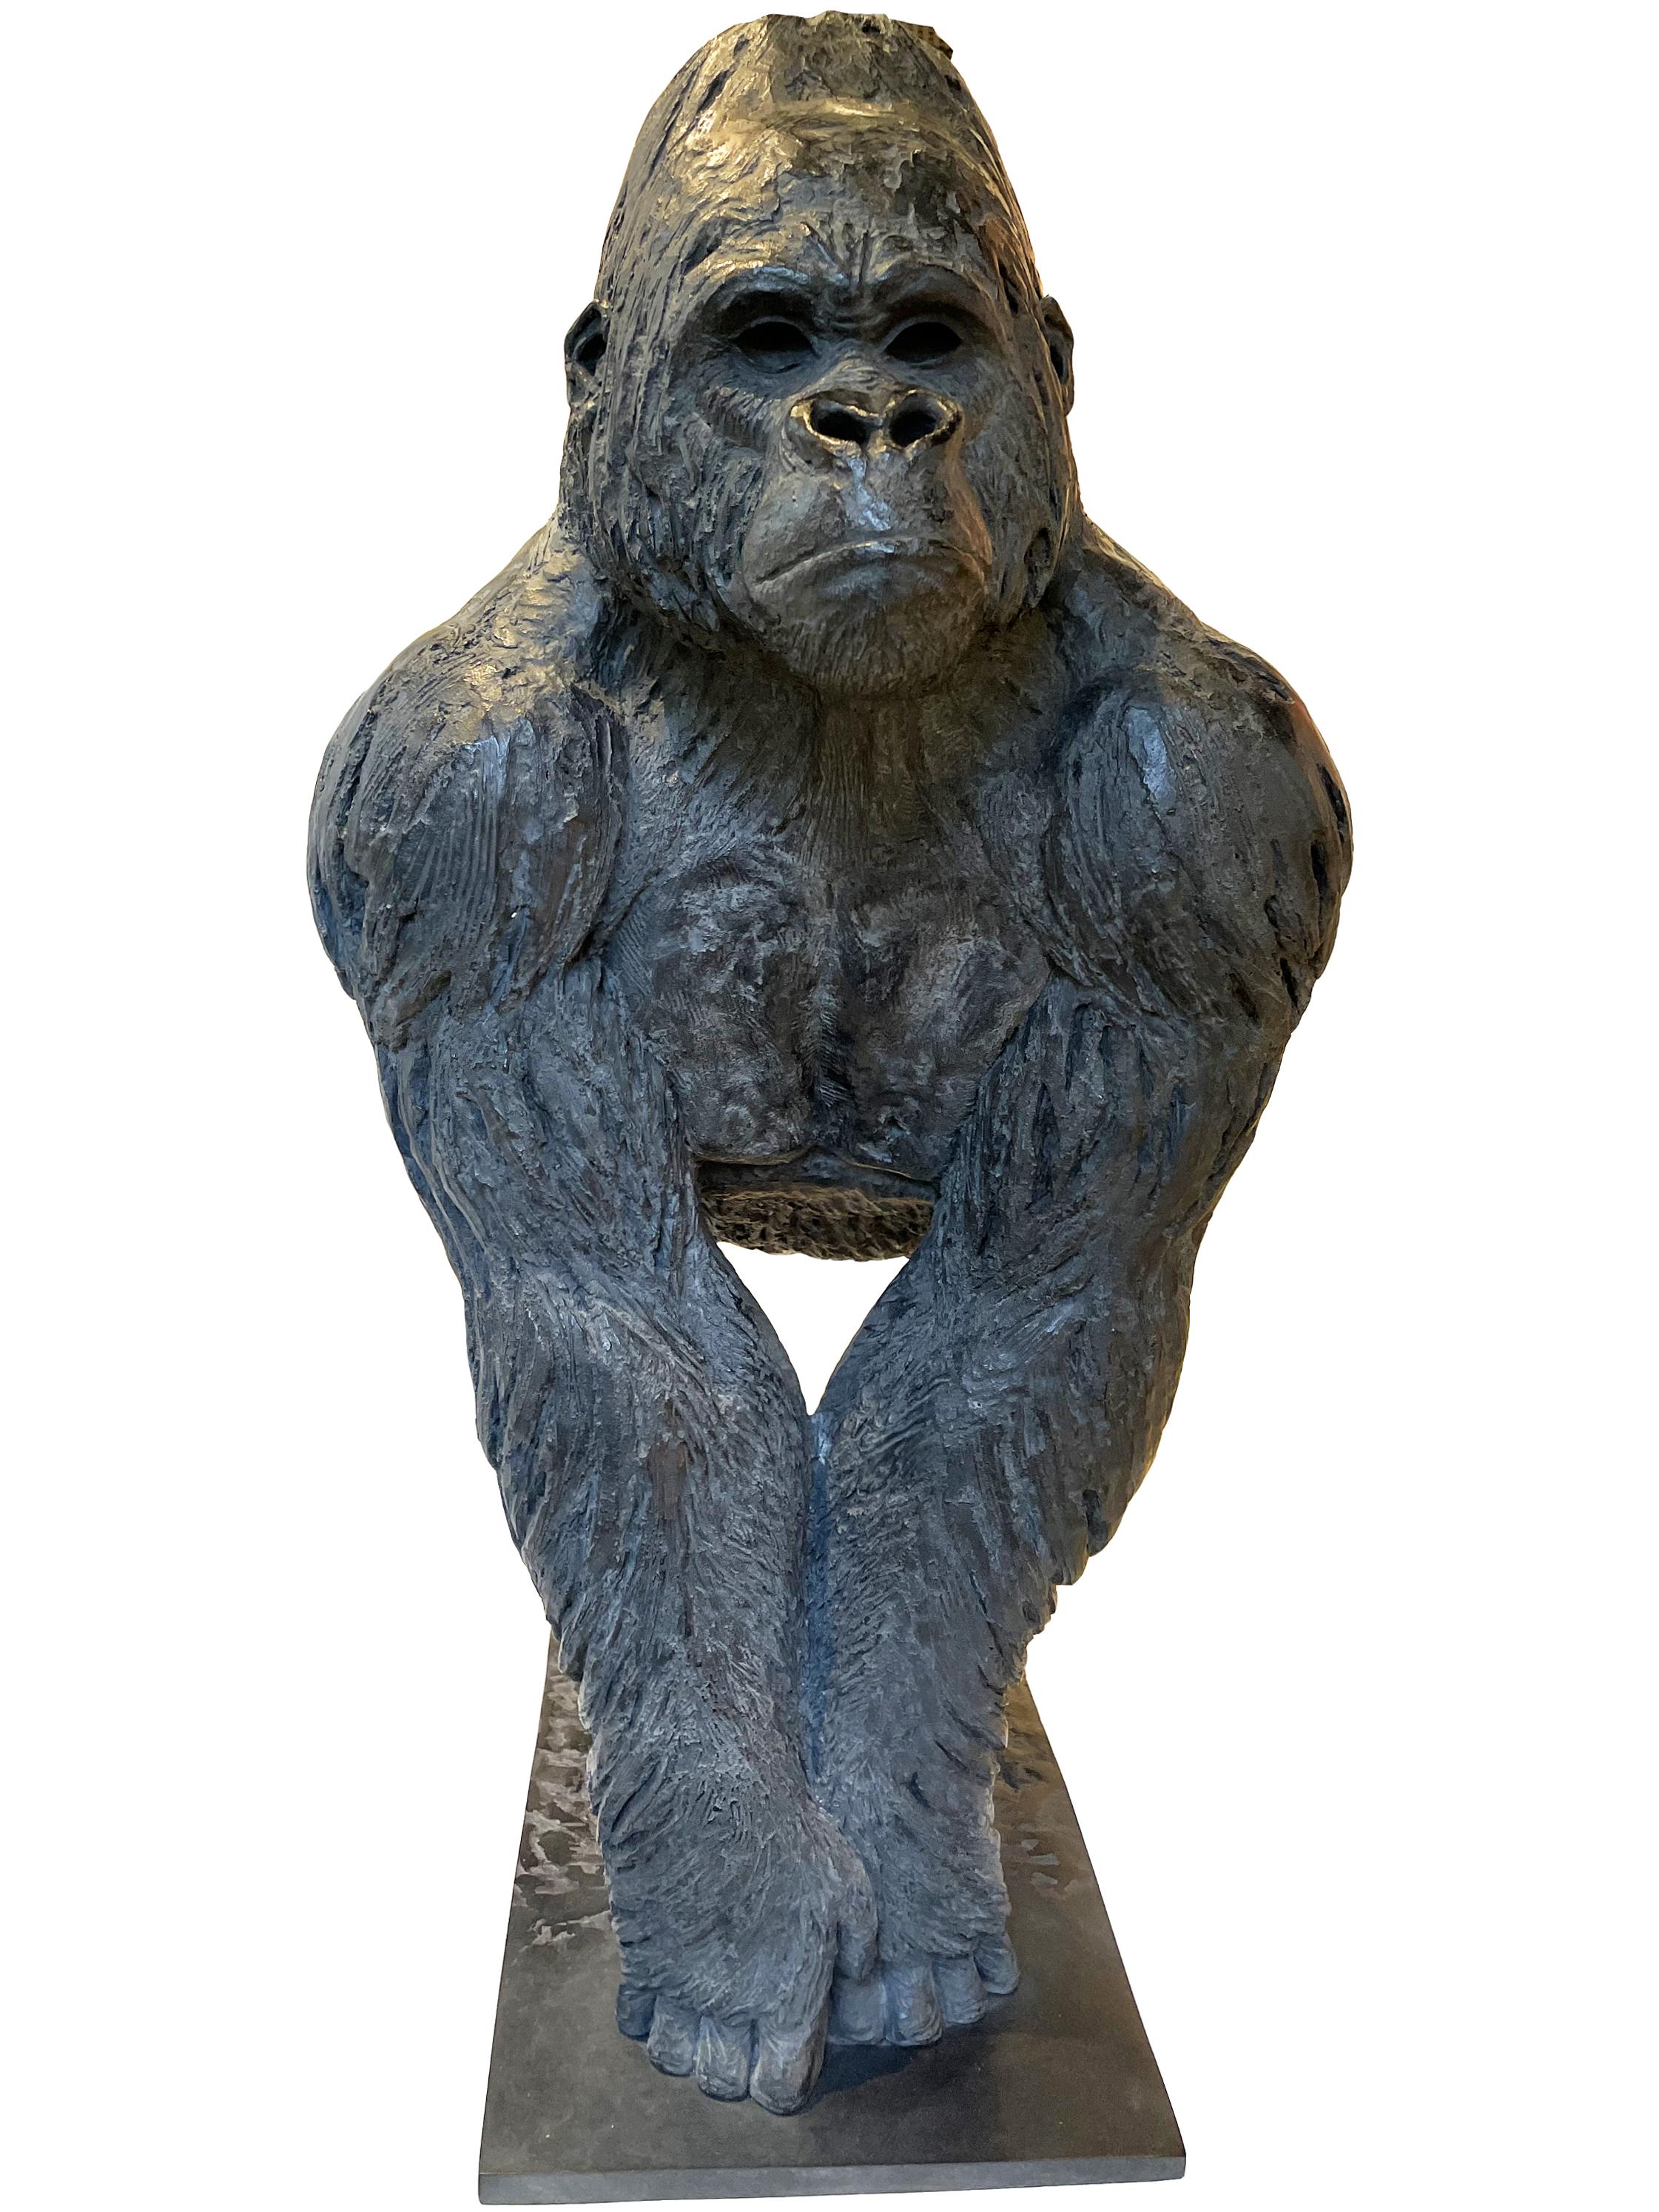 Sculpture de gorille du 21ème siècle CONGO par Jean-Pierre Chabert de France

Sculpture en bronze
Buste de gorille
Fonderie Rosini

NOTRE DÉCLARATION 

